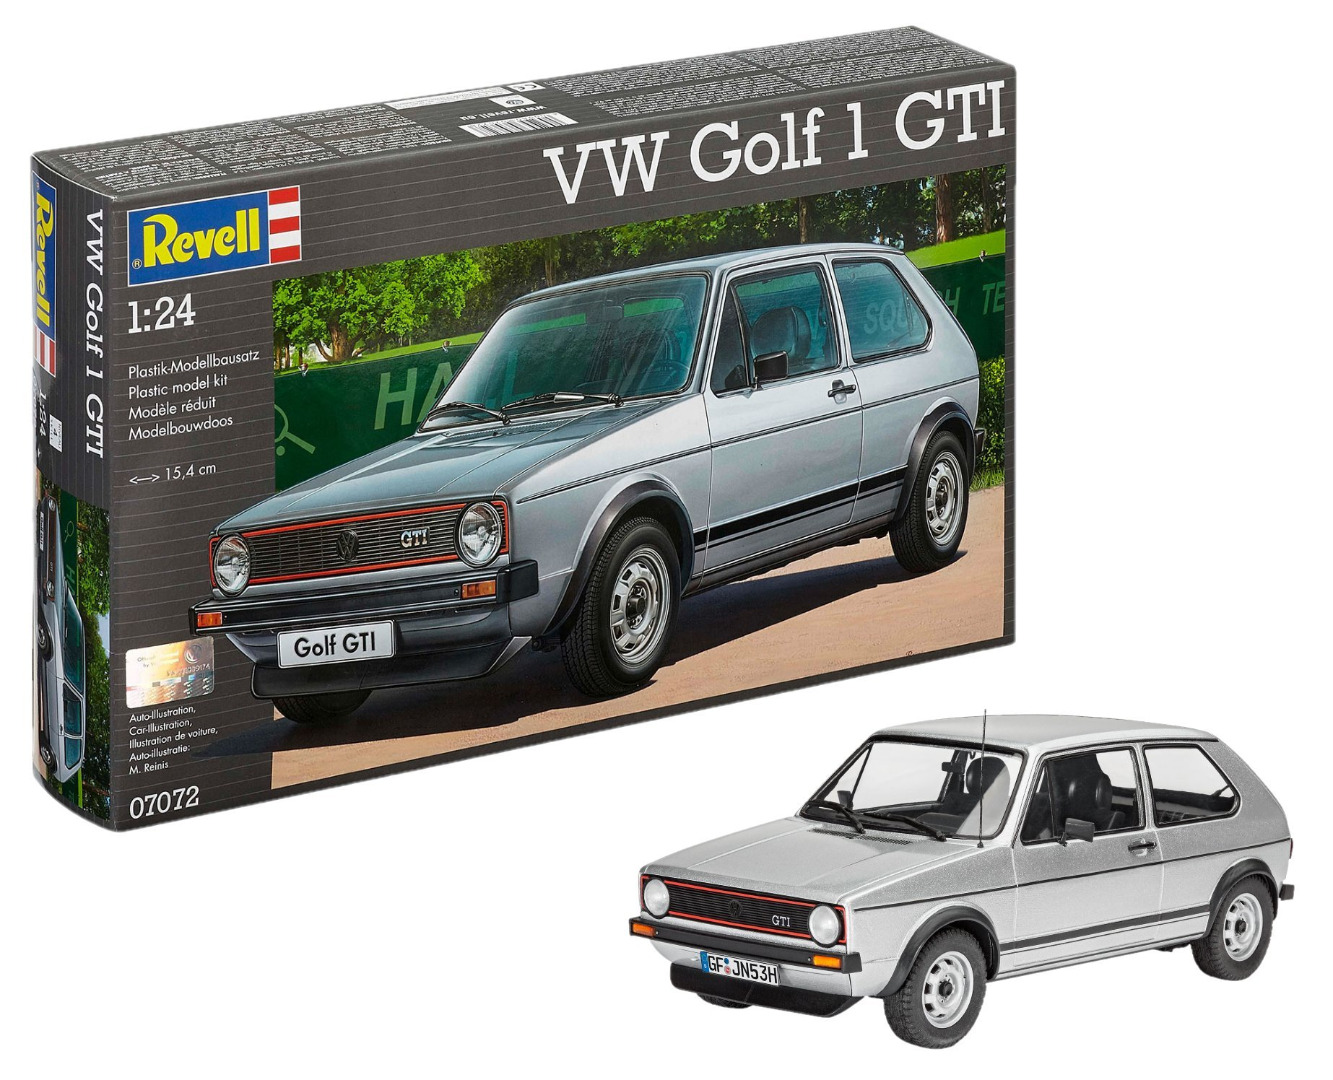 Revell Model Kit VW Golf 1 GTI Scale 1:24